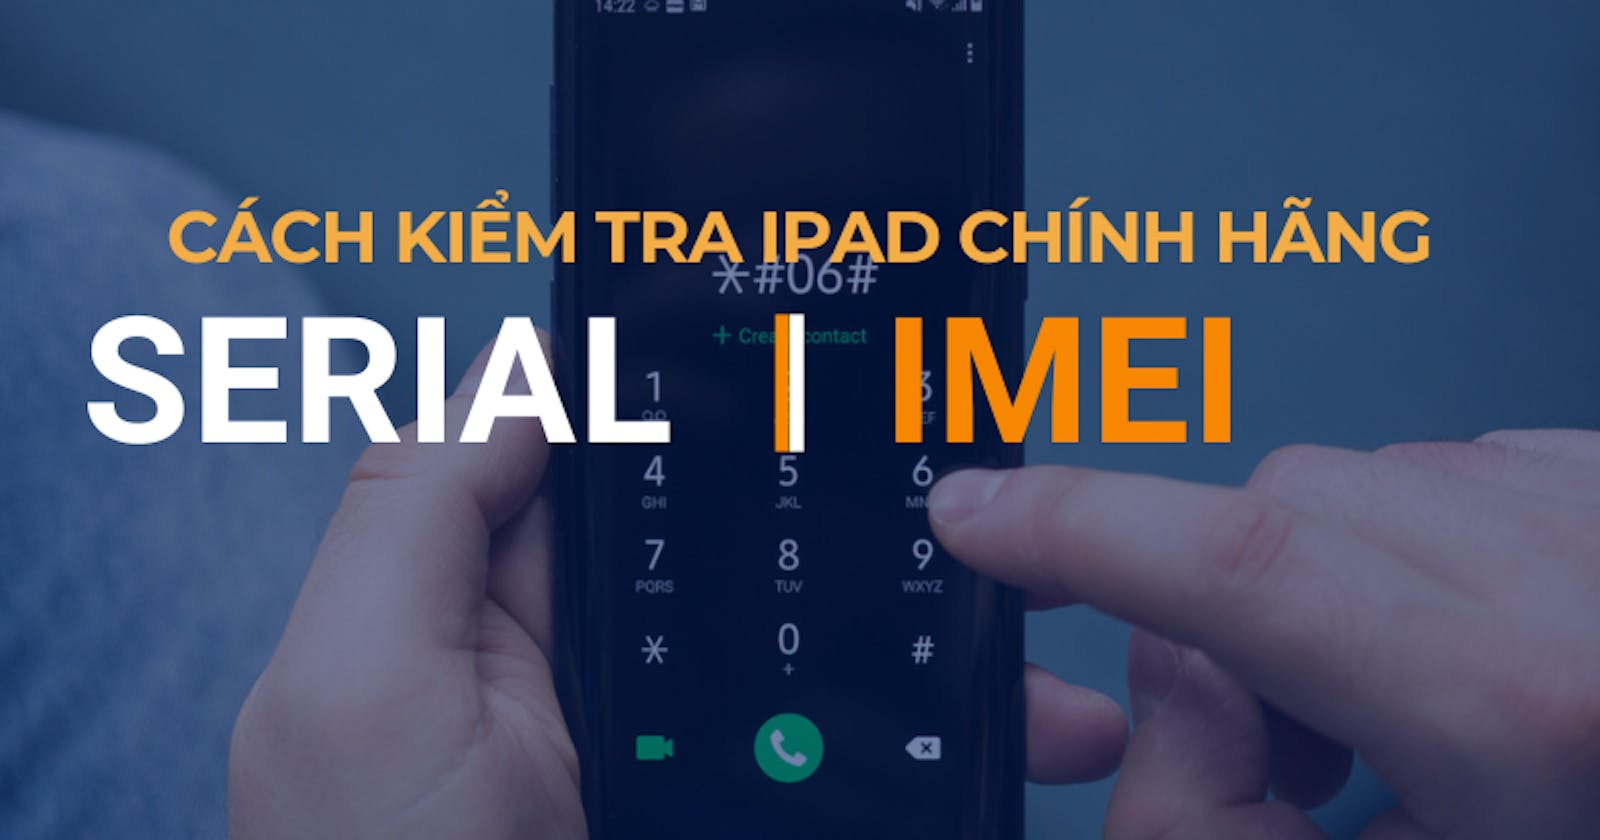 Kiểm tra iPad chính hãng bằng số Serial, IMEI